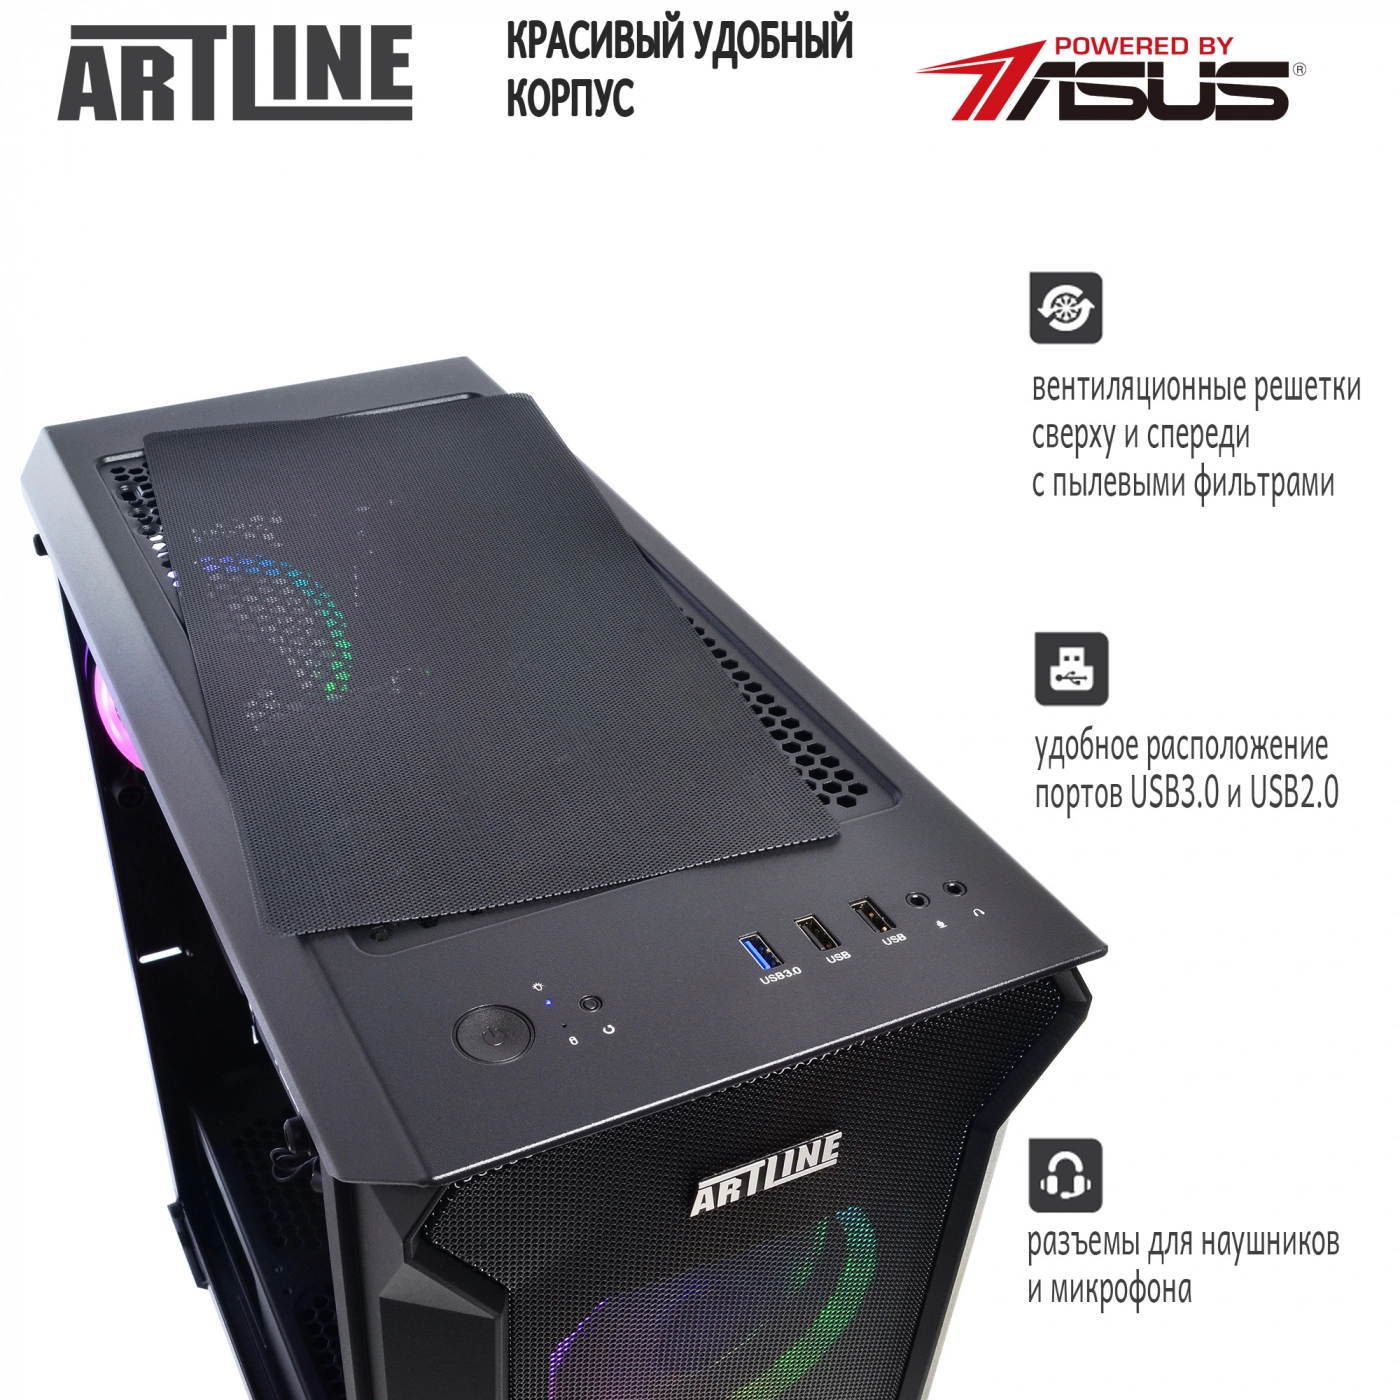 Купить Компьютер ARTLINE Gaming X73v17 - фото 5